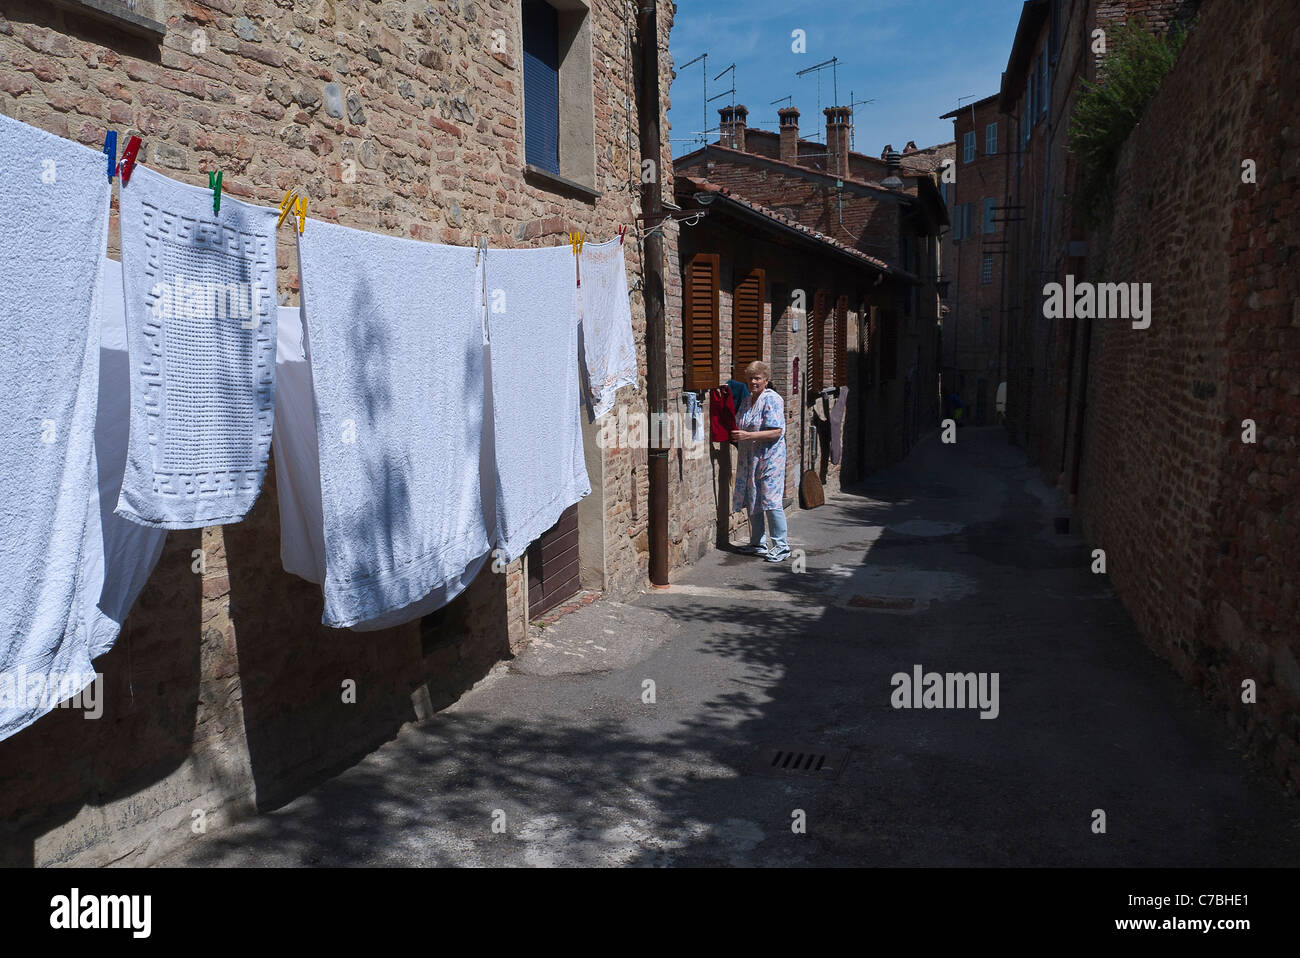 Blanchisserie soit accroché à sécher sur une corde à linge accroché sur une étroite rue médiévale de la ville de Citta della Pieve, Ombrie, Italie. Banque D'Images